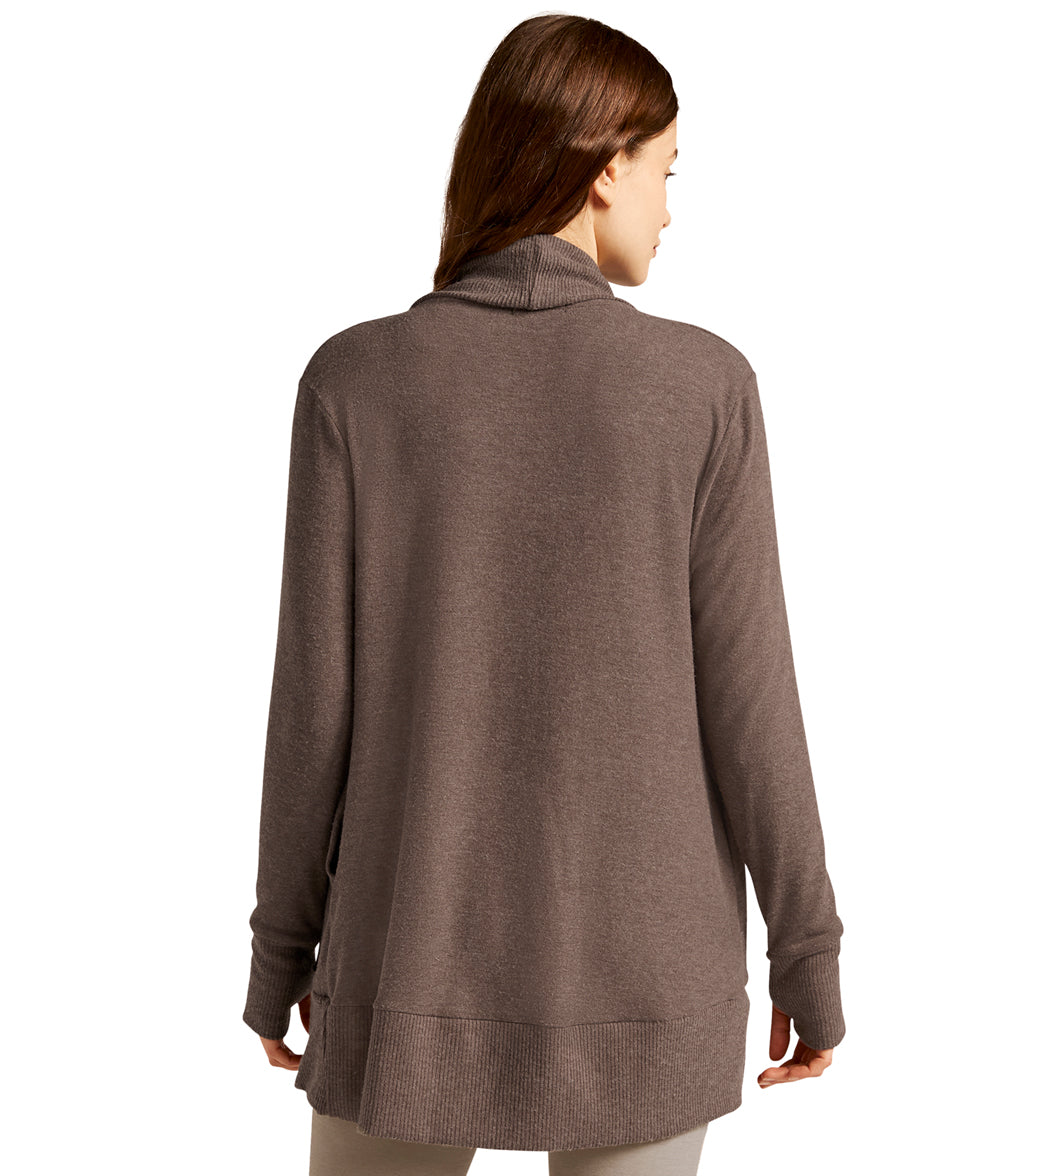 Beyond Yoga Asymmetrical Drape Convertible Cardigan, $128